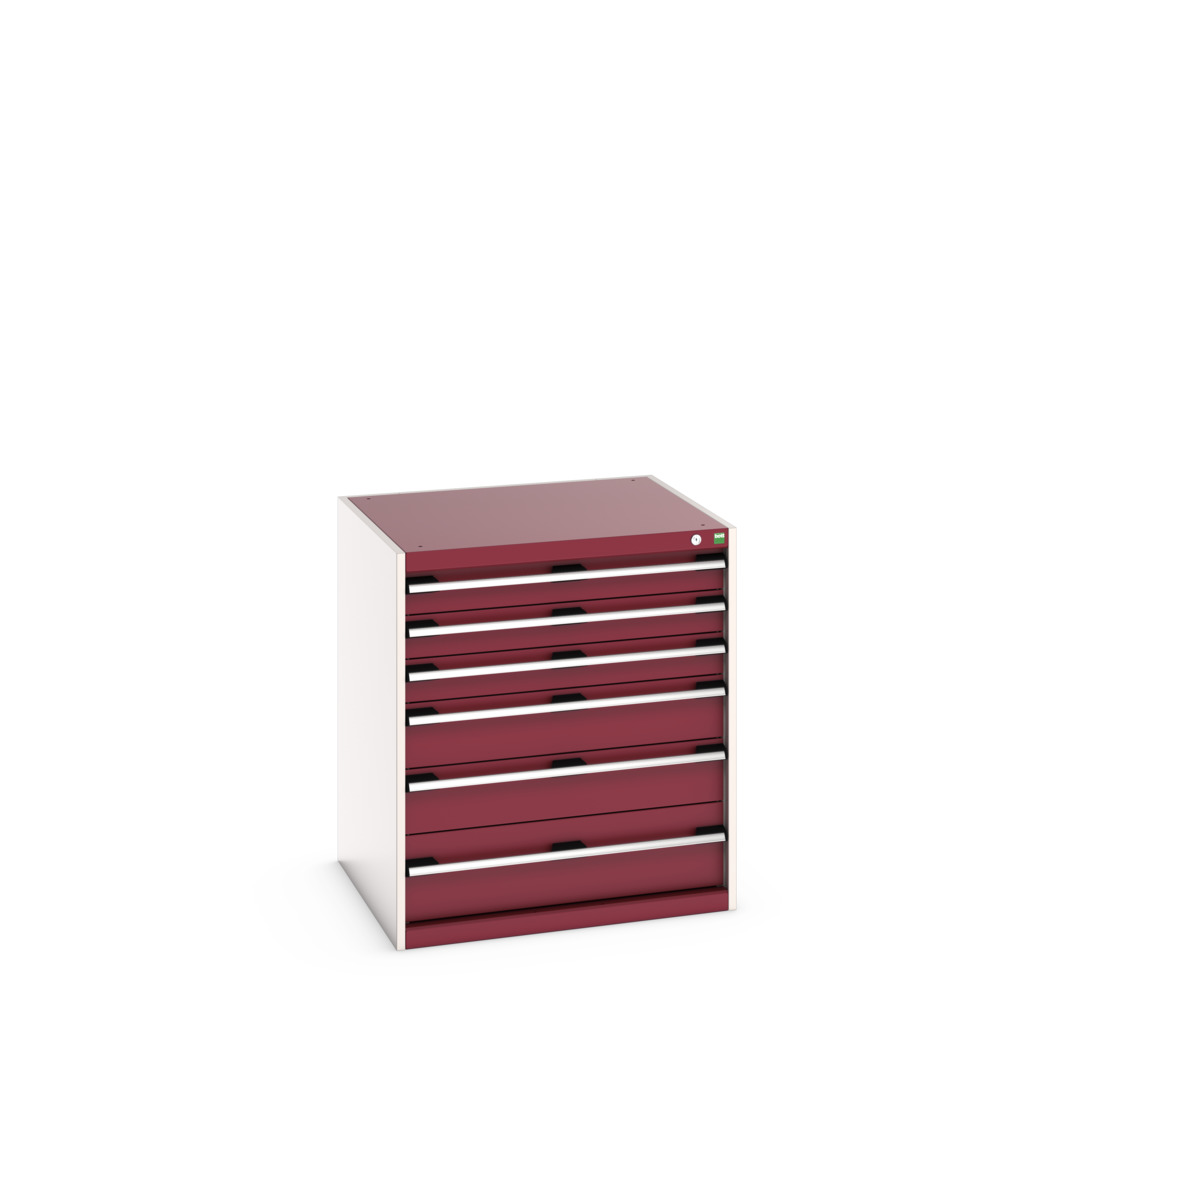 40028115.24V - cubio drawer cabinet